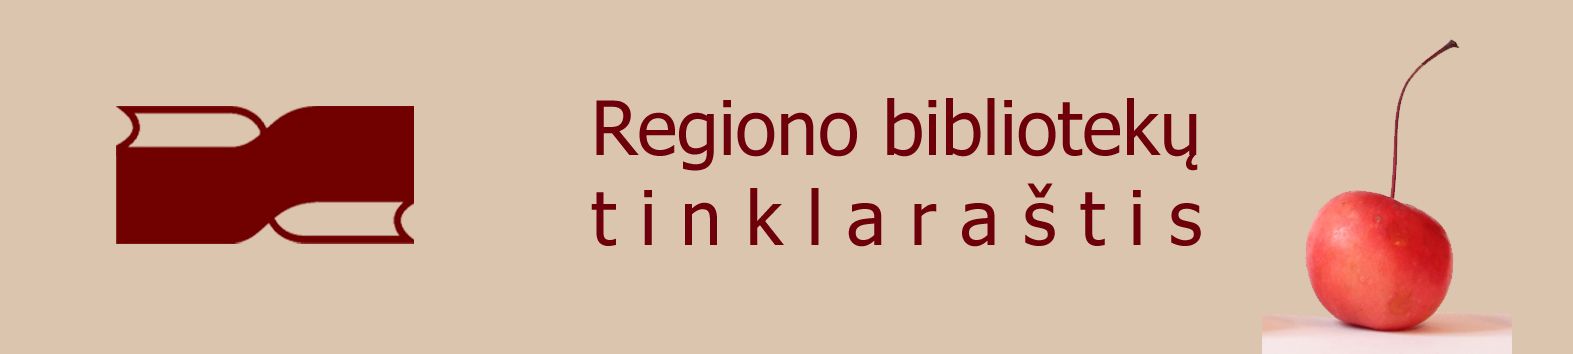 Regiono bibliotekų tinklaraštis